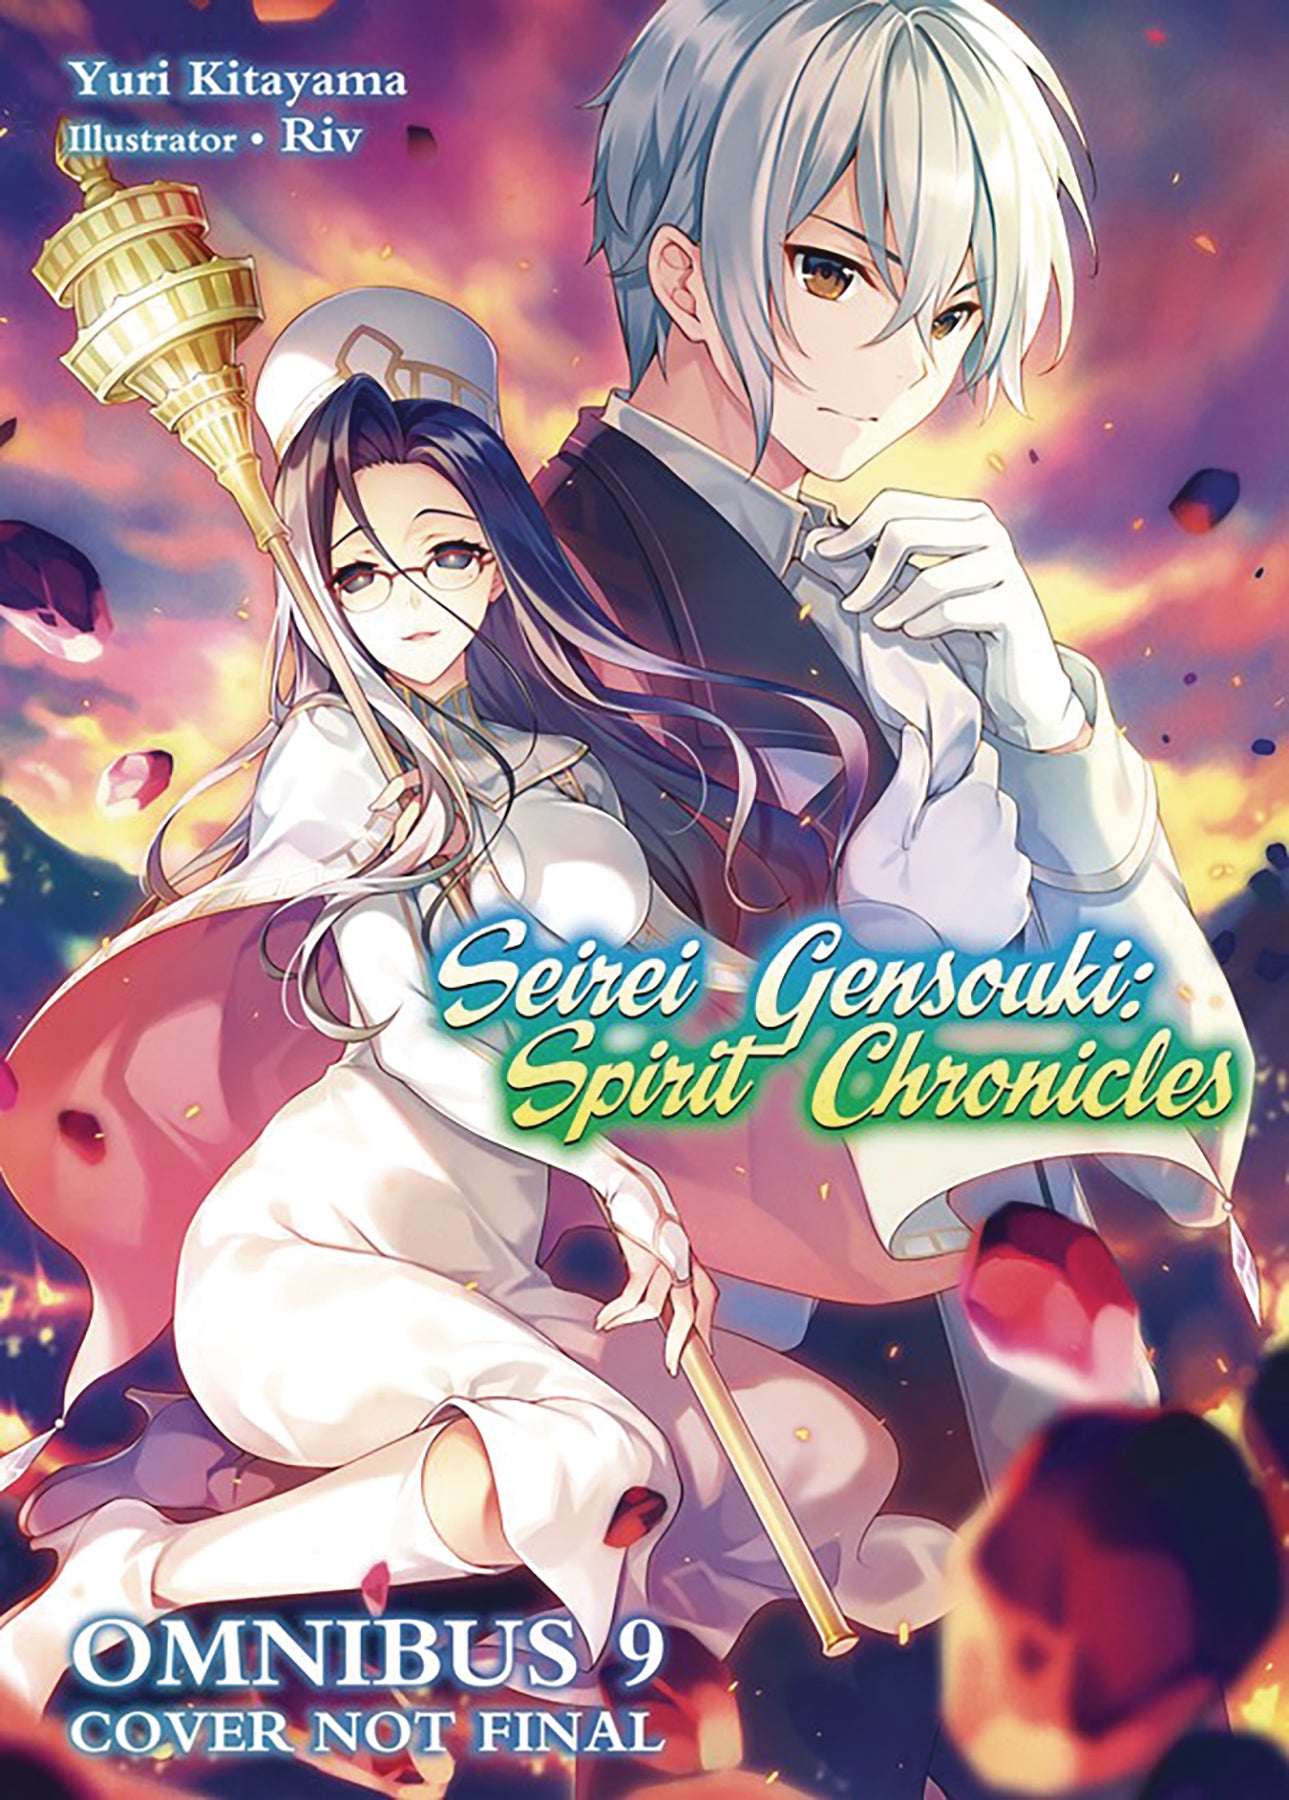 Seirei Gensouki: Spirit Chronicles Volume 15 See more